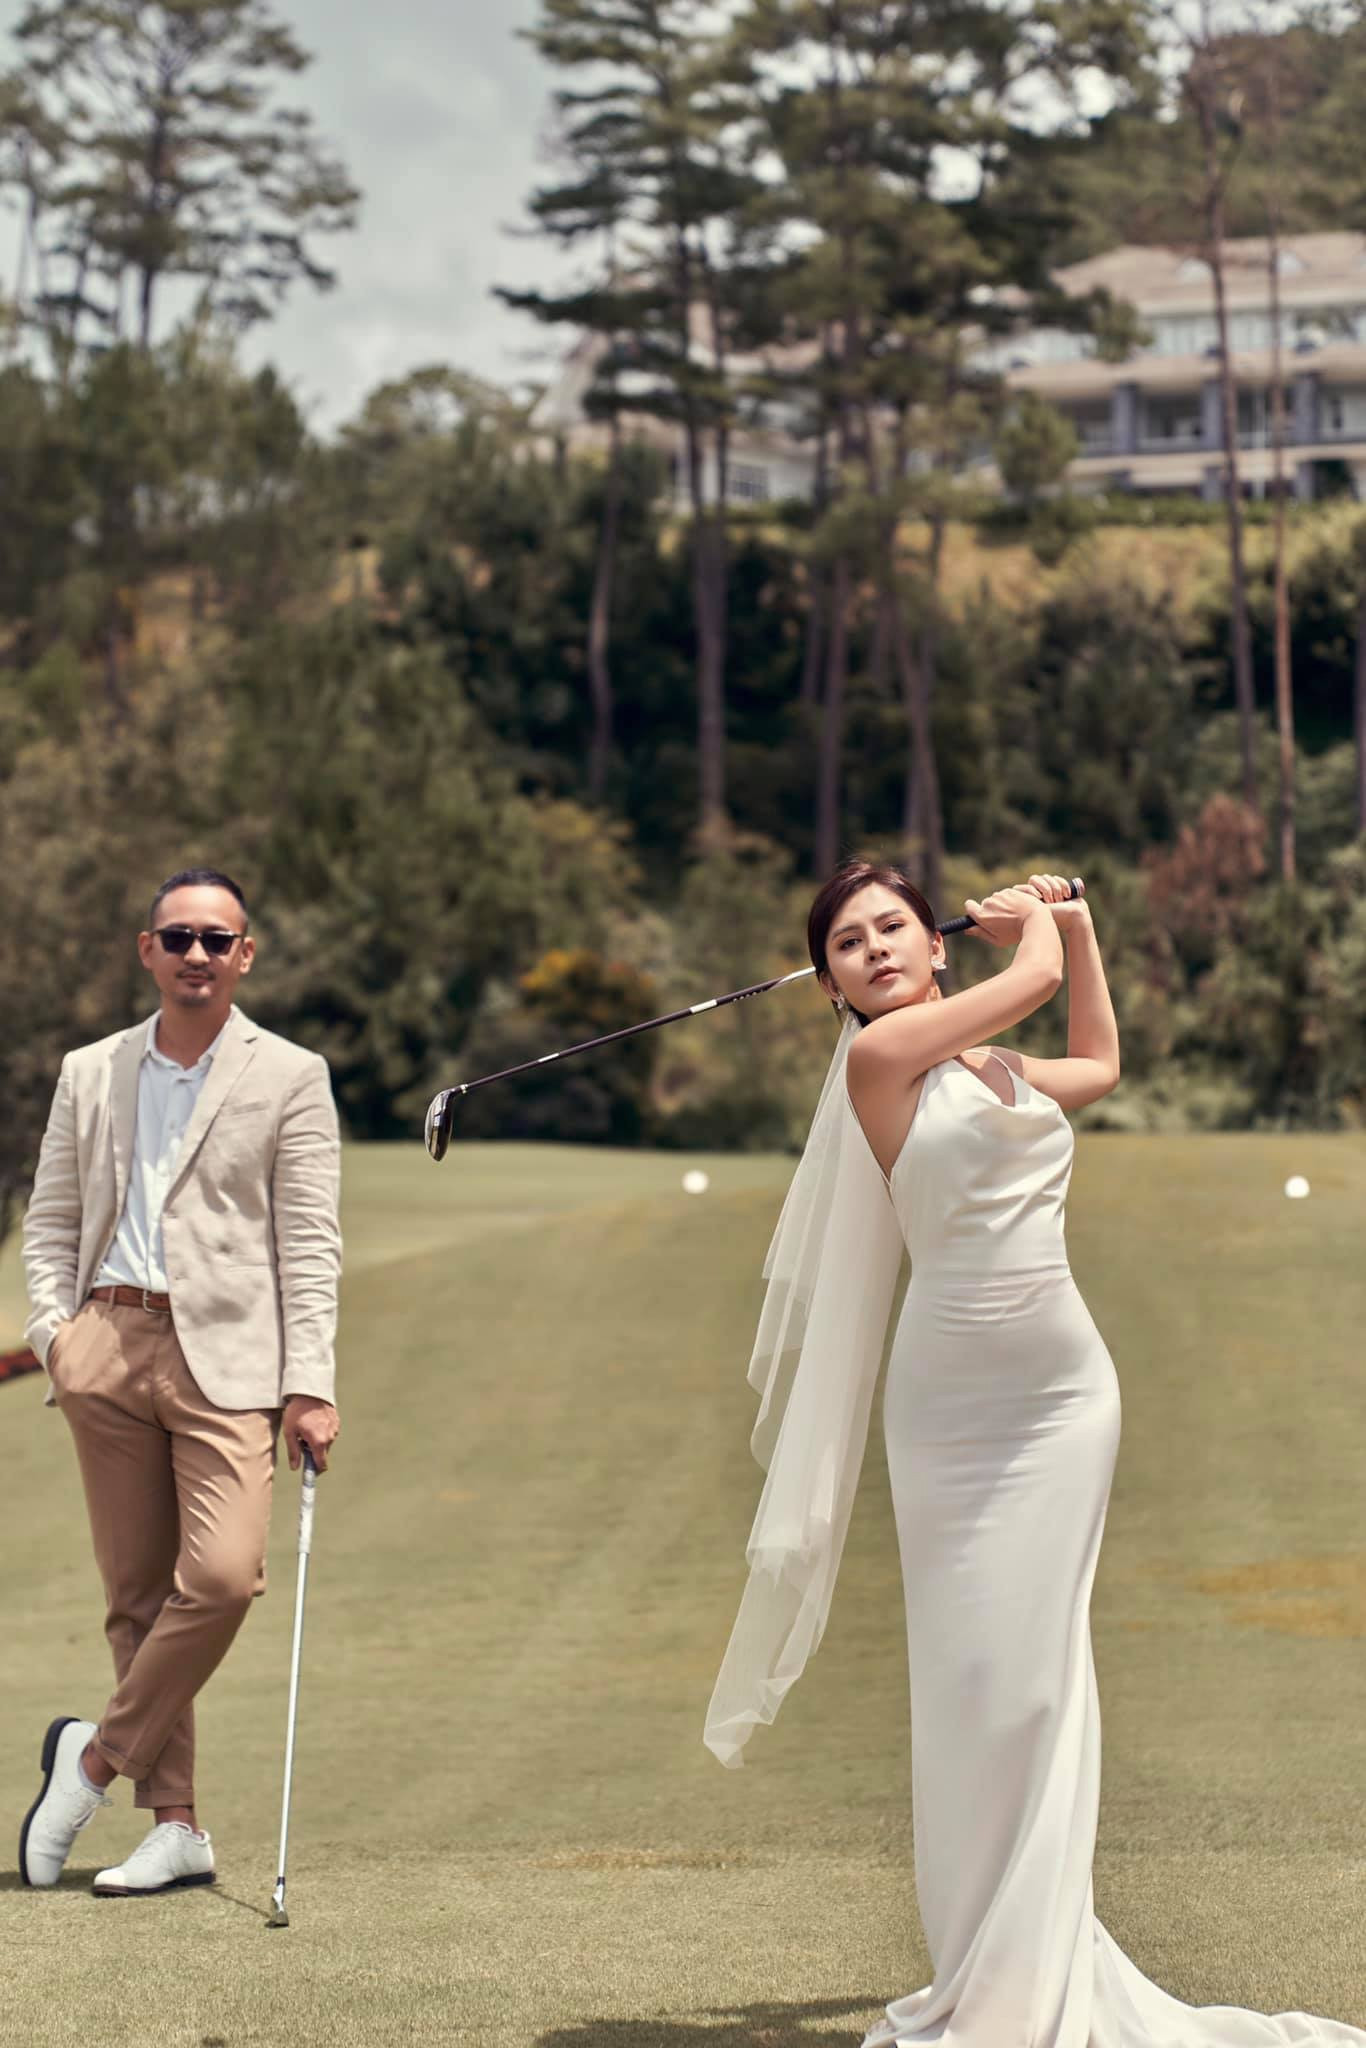 MC, diễn viên nổi tiếng đi nhầm sân golf lấy được chồng như ý-2